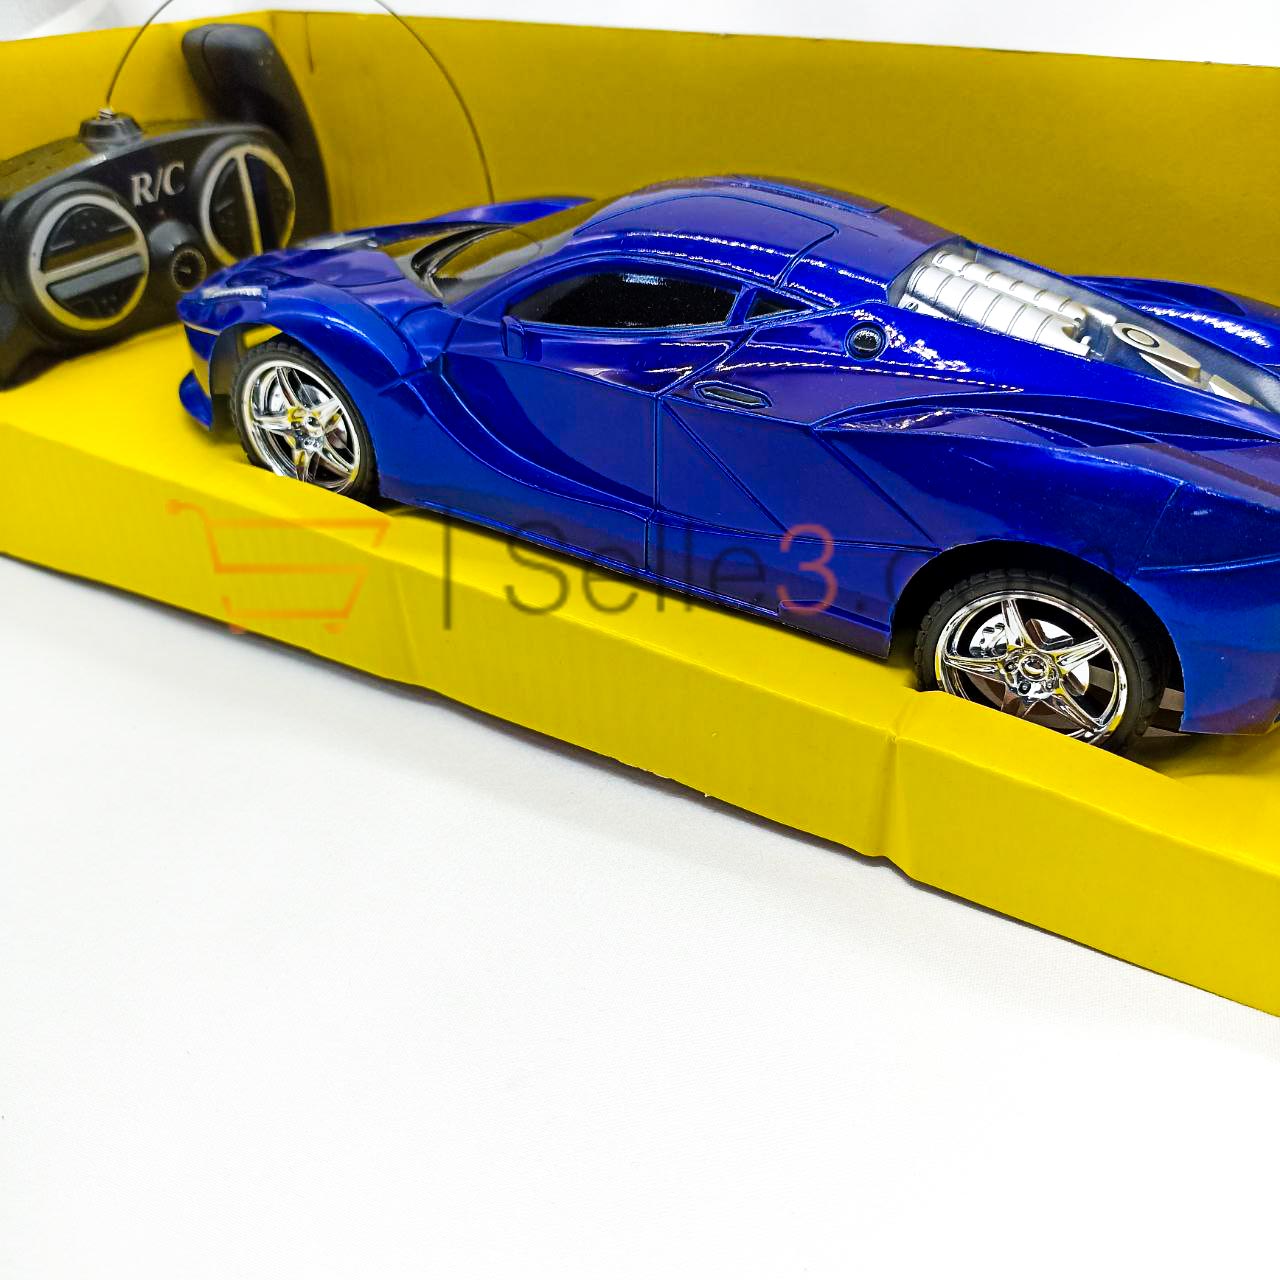 سيارة لامبورغيني لاسلكية Lamborghini Sansfil Voiture Wireless Car Toy